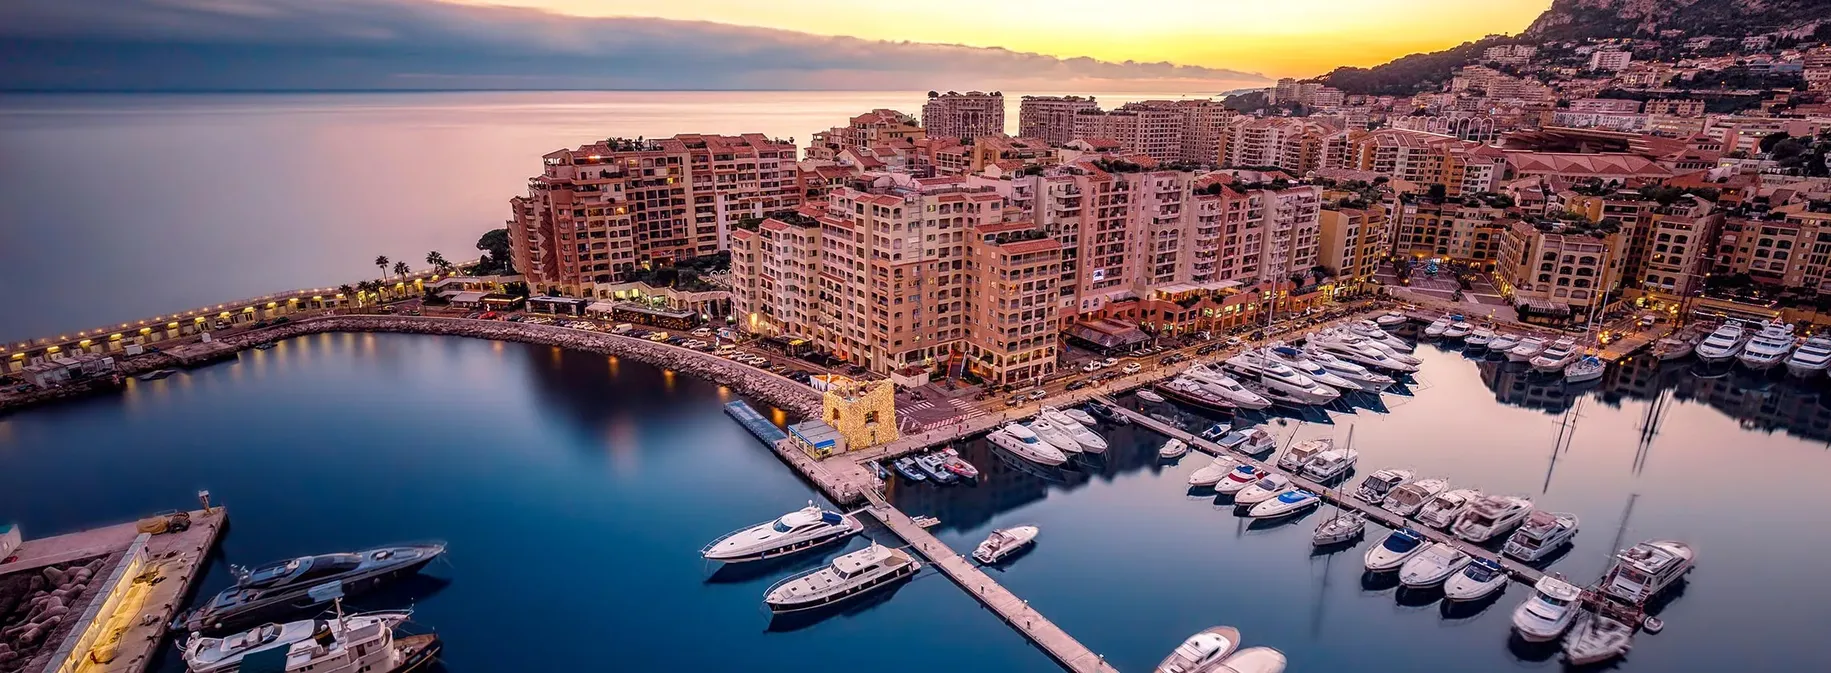 Monaco | Monaco Region, Monaco - Rated 8